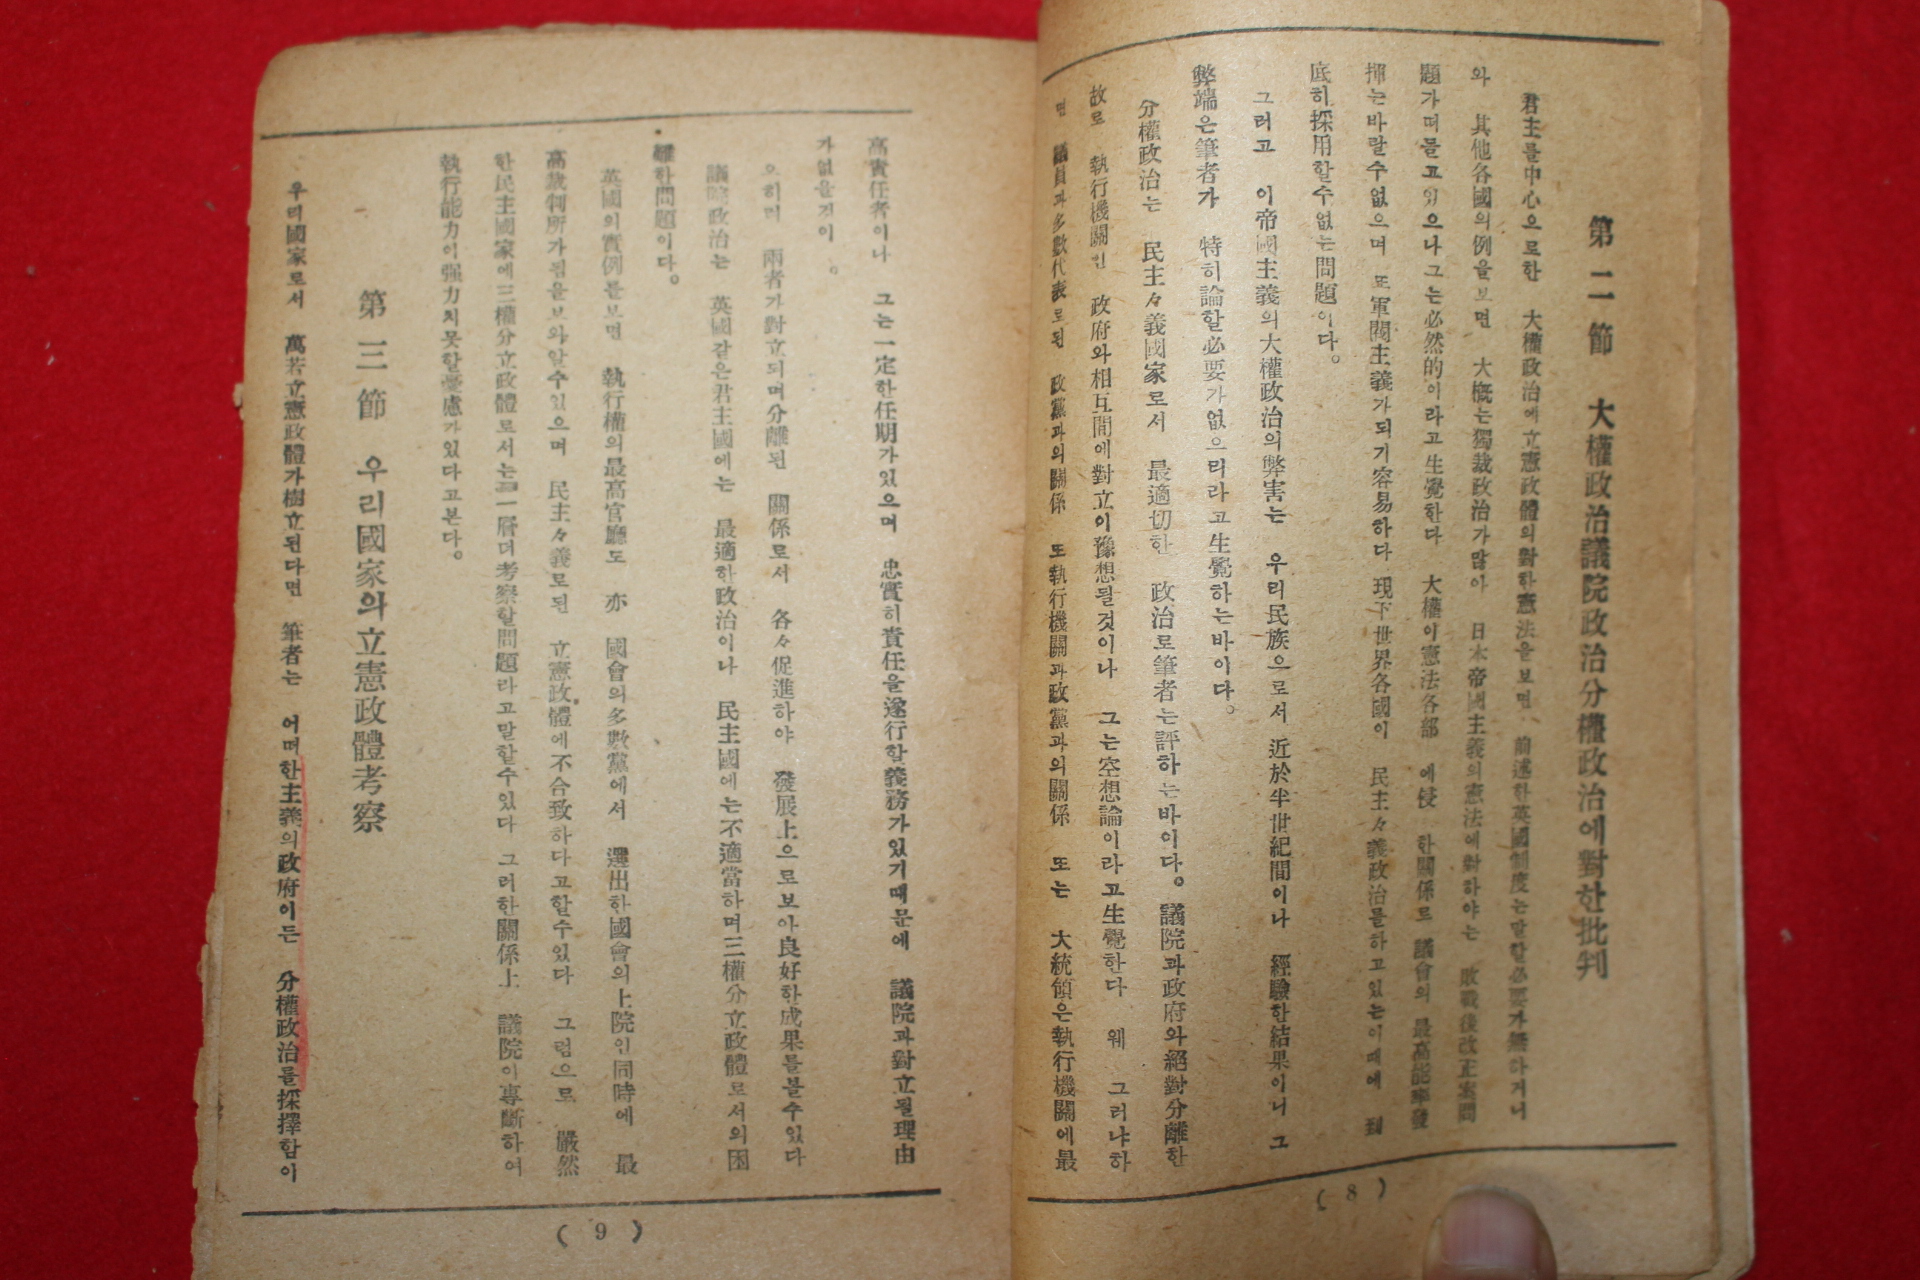 1945년 정치문제연구원 우리나라 입헌정체(立憲政體)는